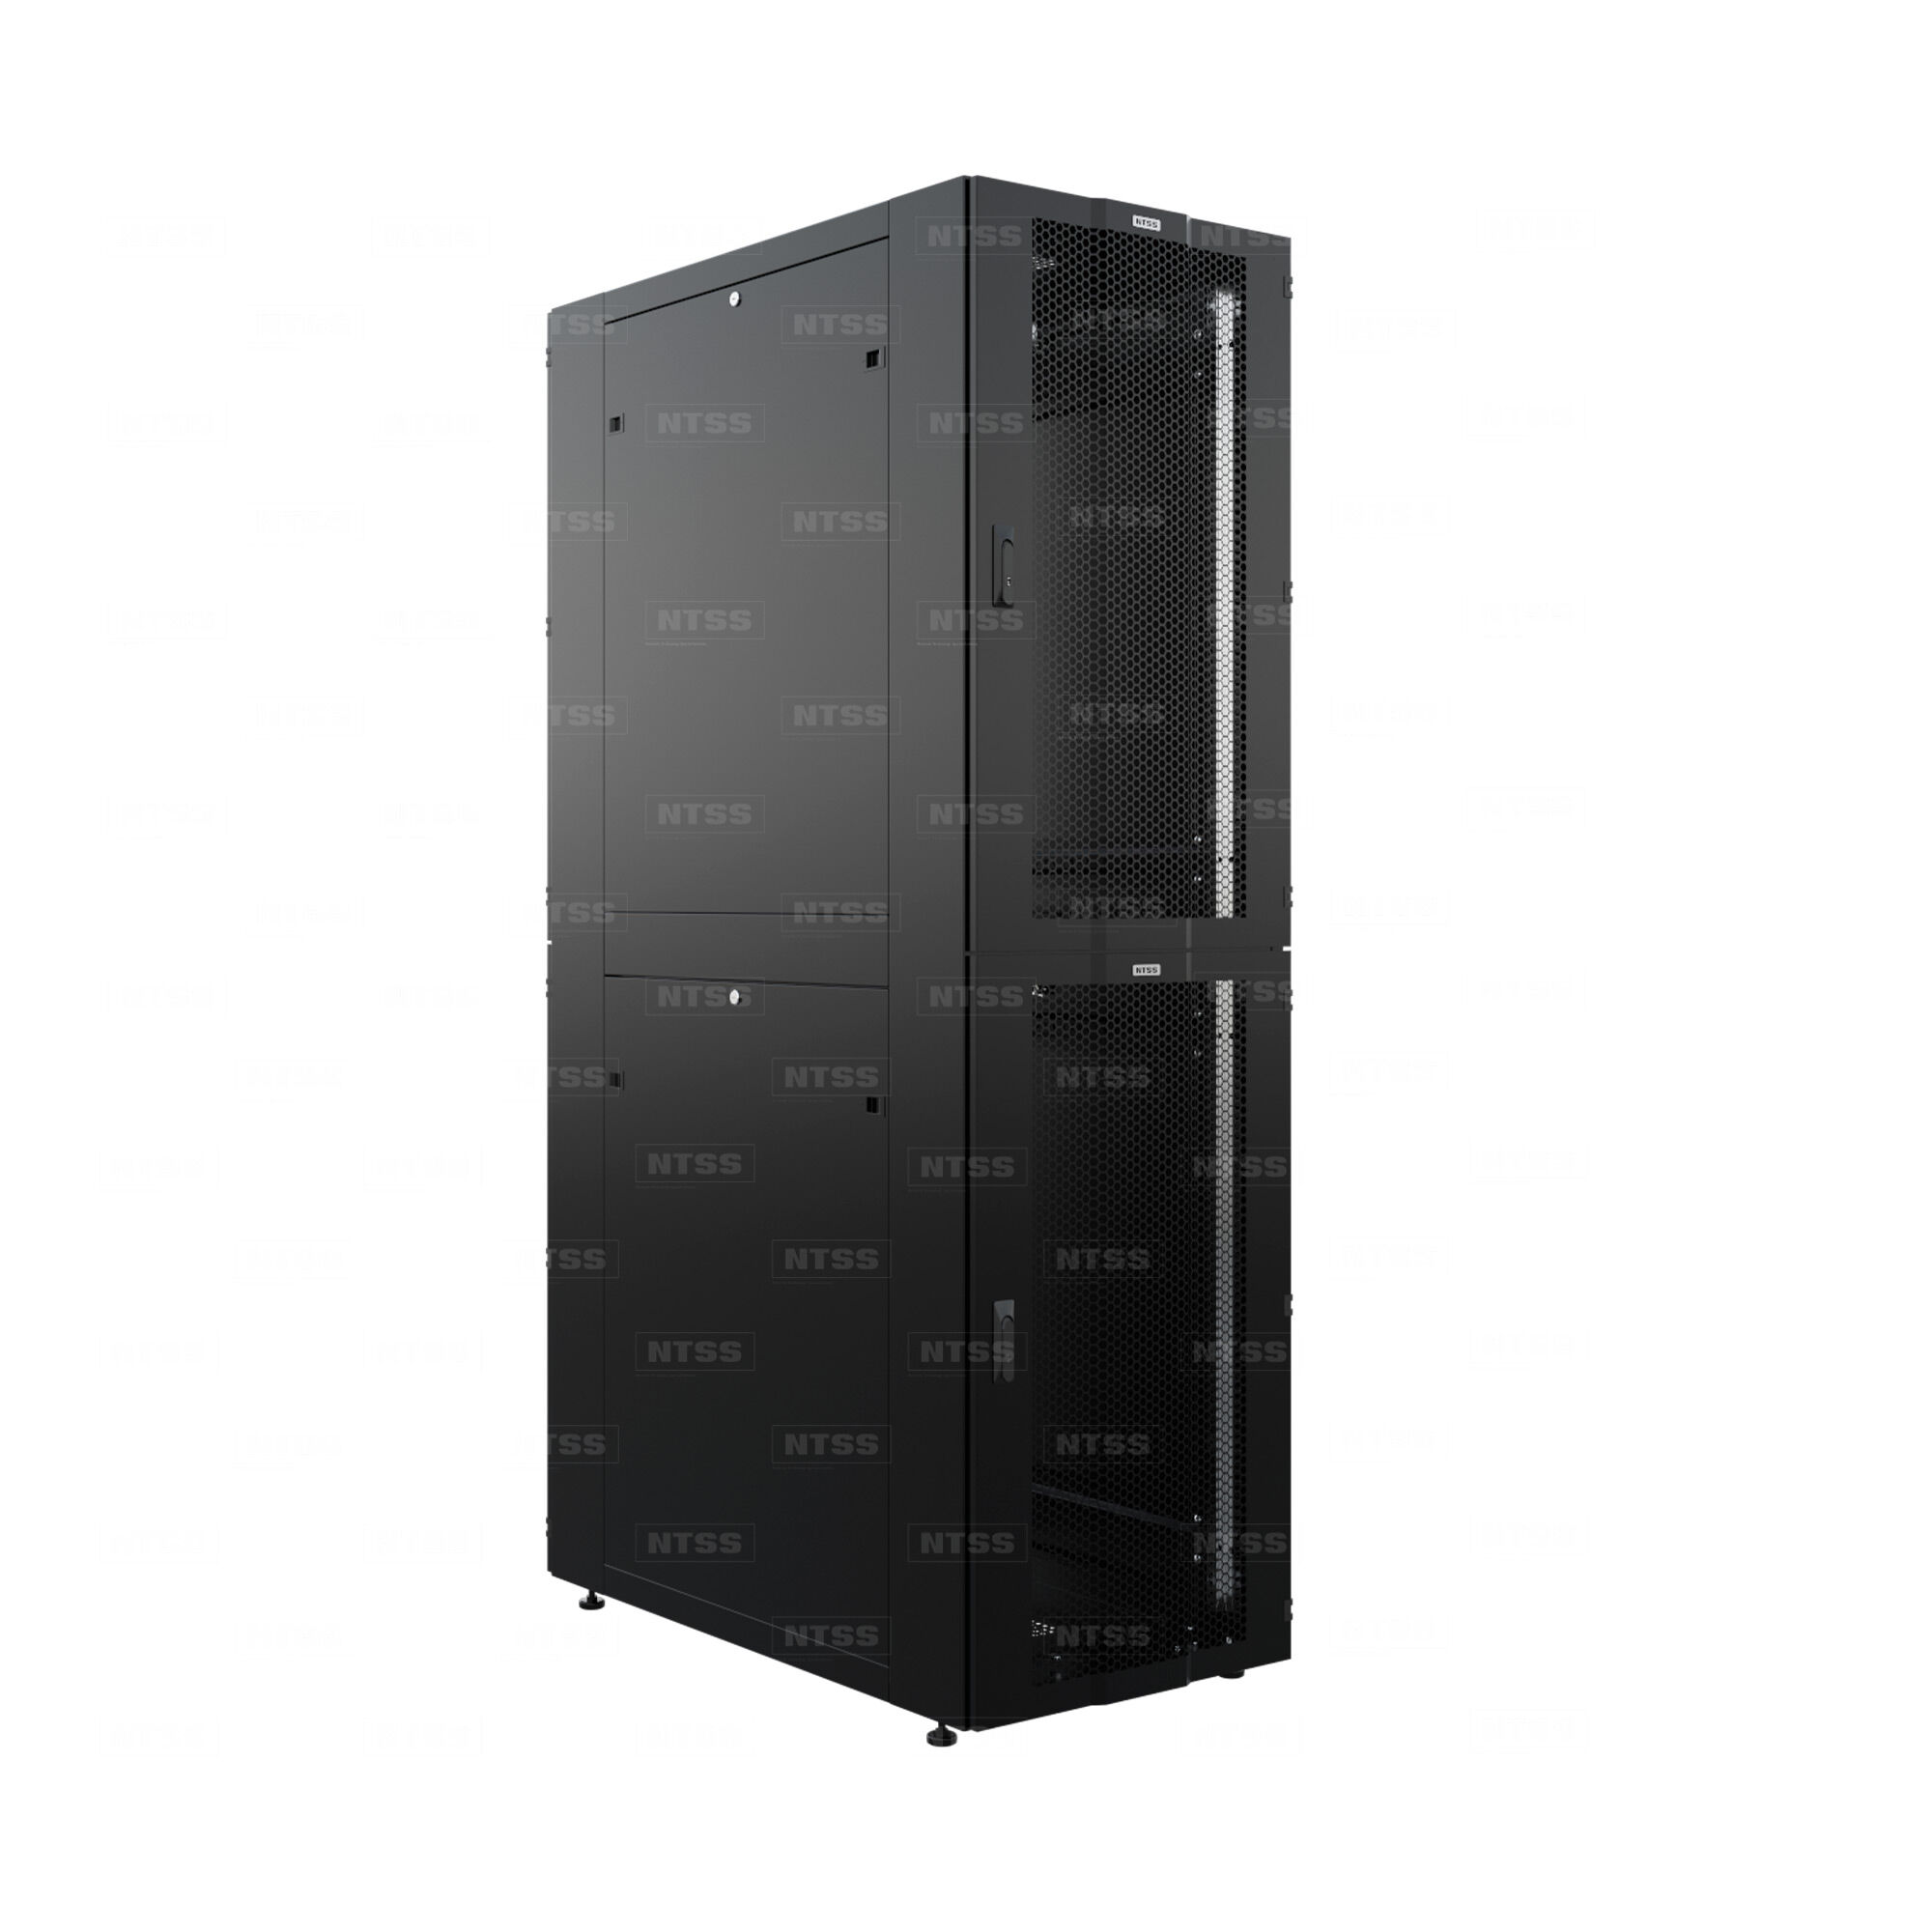 Шкаф напольный секционный NTSS CoPC 46U 800х1070мм, 4 профиля 19 на секцию, 2 секции по 23U, двери перфорированные, регу